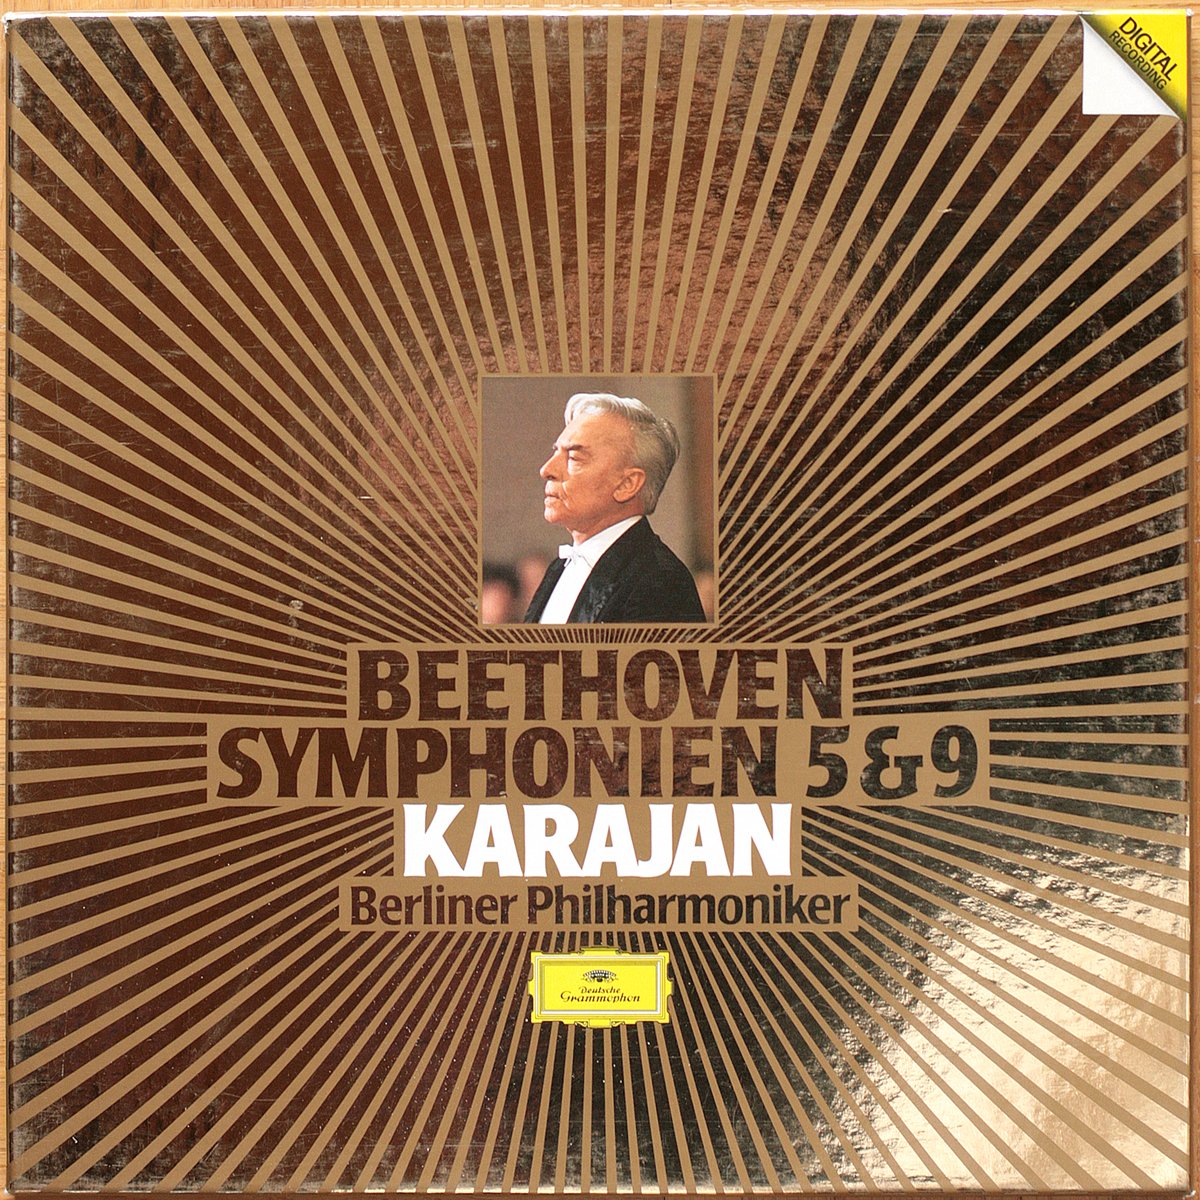 DGG 413933 Beethoven Symphonies 5 9 Karajan DGG Digital Aufnahme